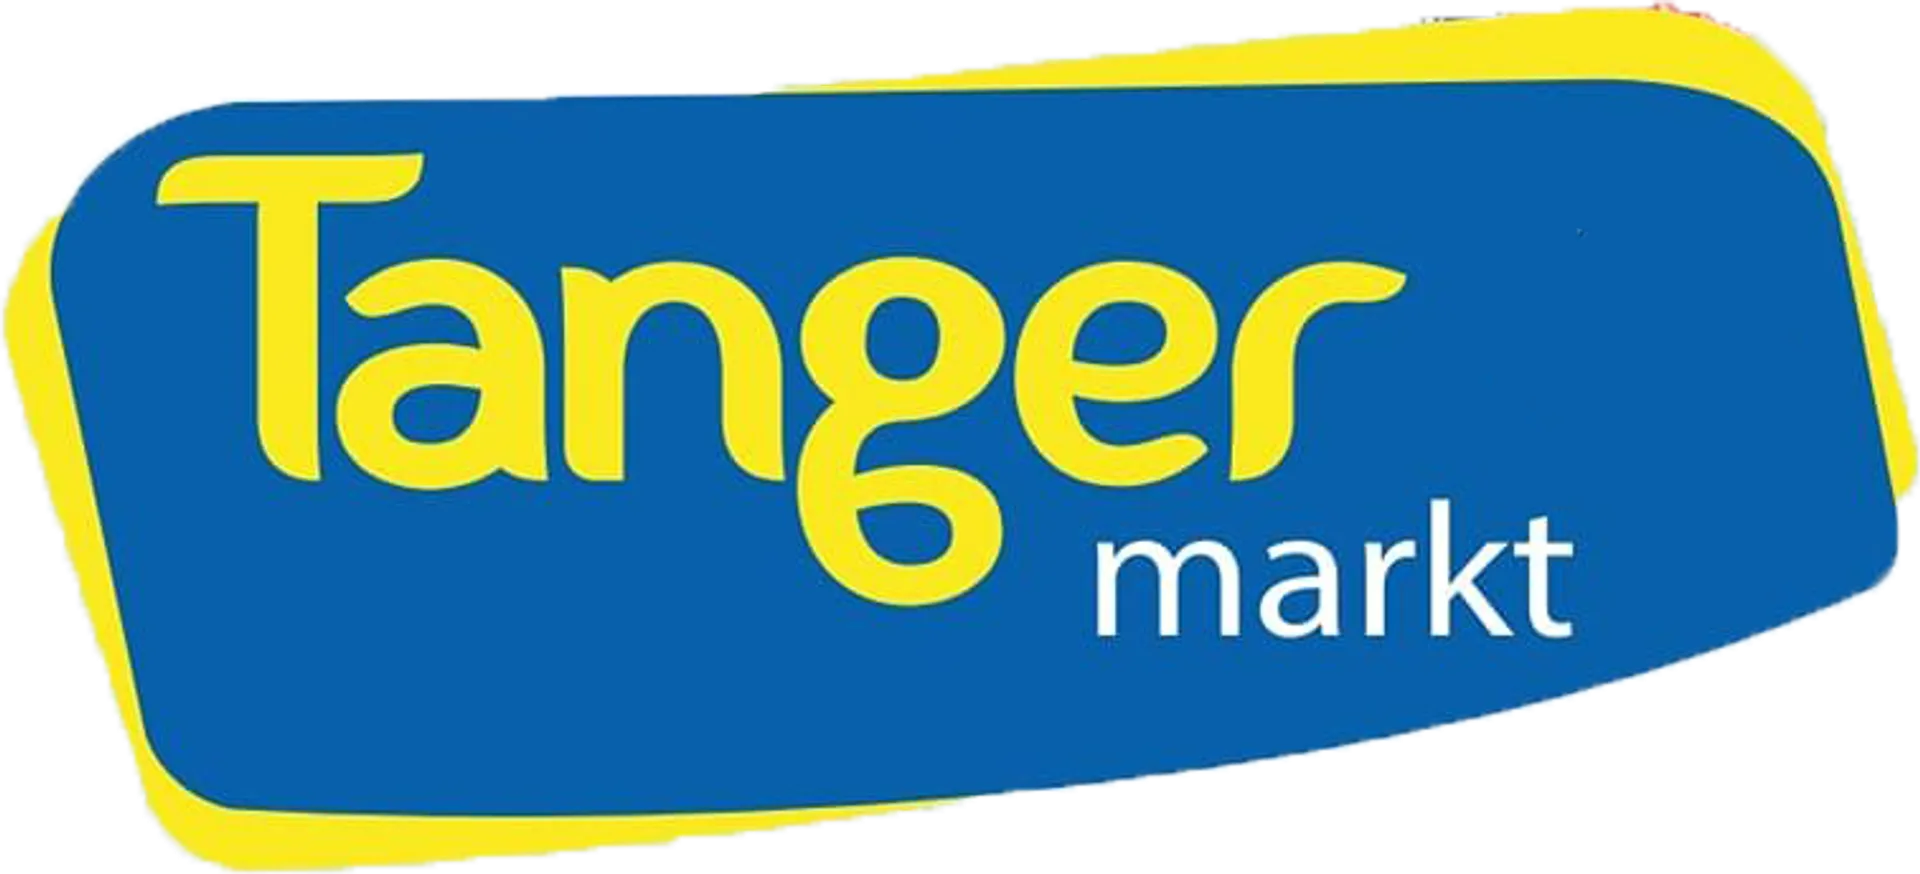 TANGER MARKT logo